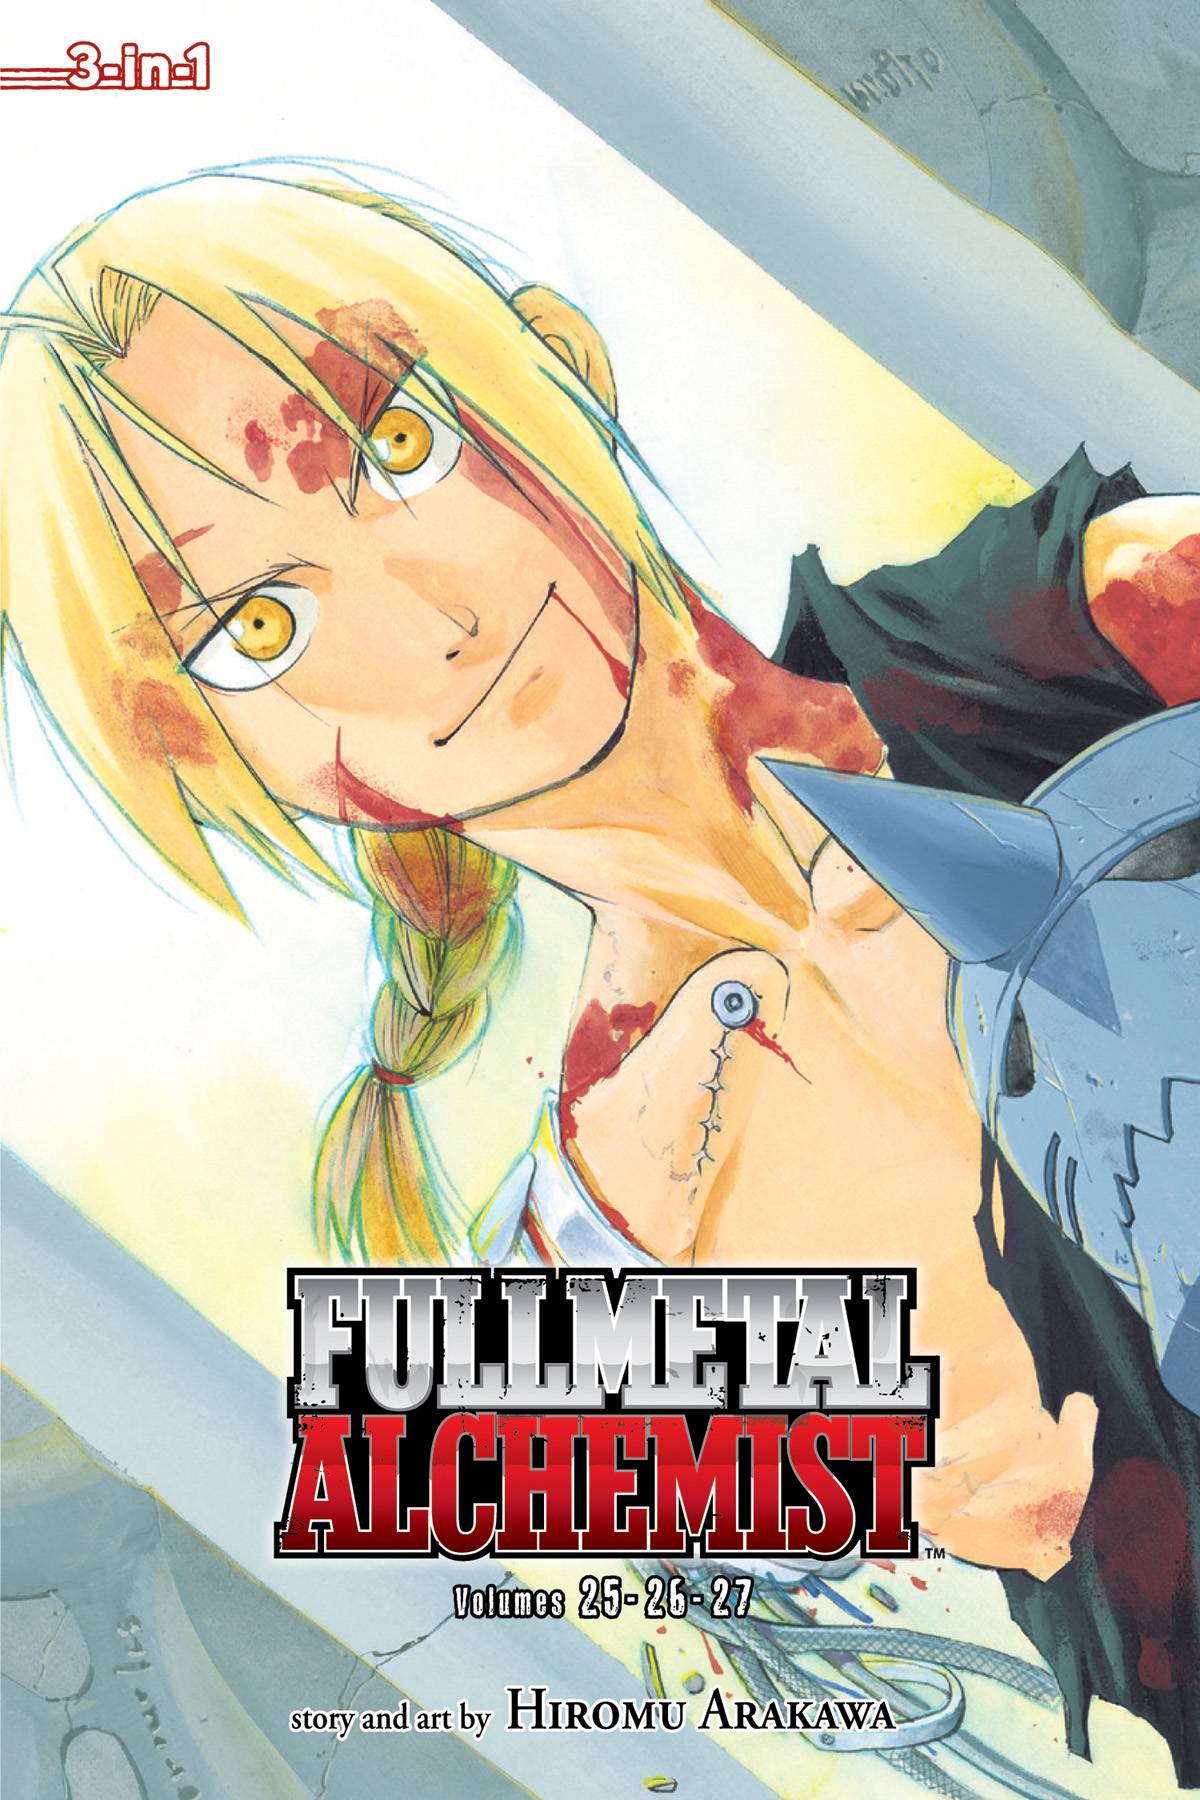  Fullmetal Alchemist, Vol. 7-9 (Fullmetal Alchemist 3